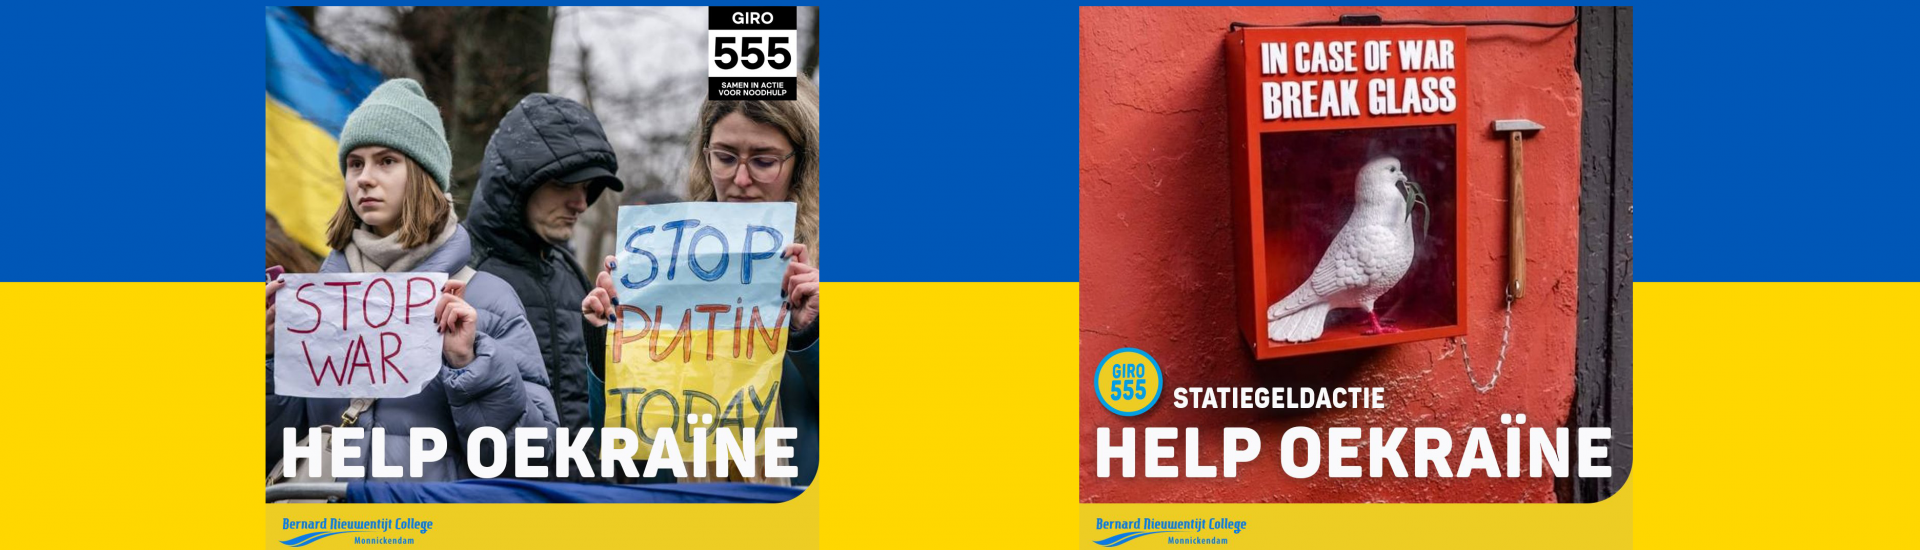 Beelden voor de actie 'help oekraïne' tegen een geel-blauwe achtergrond.